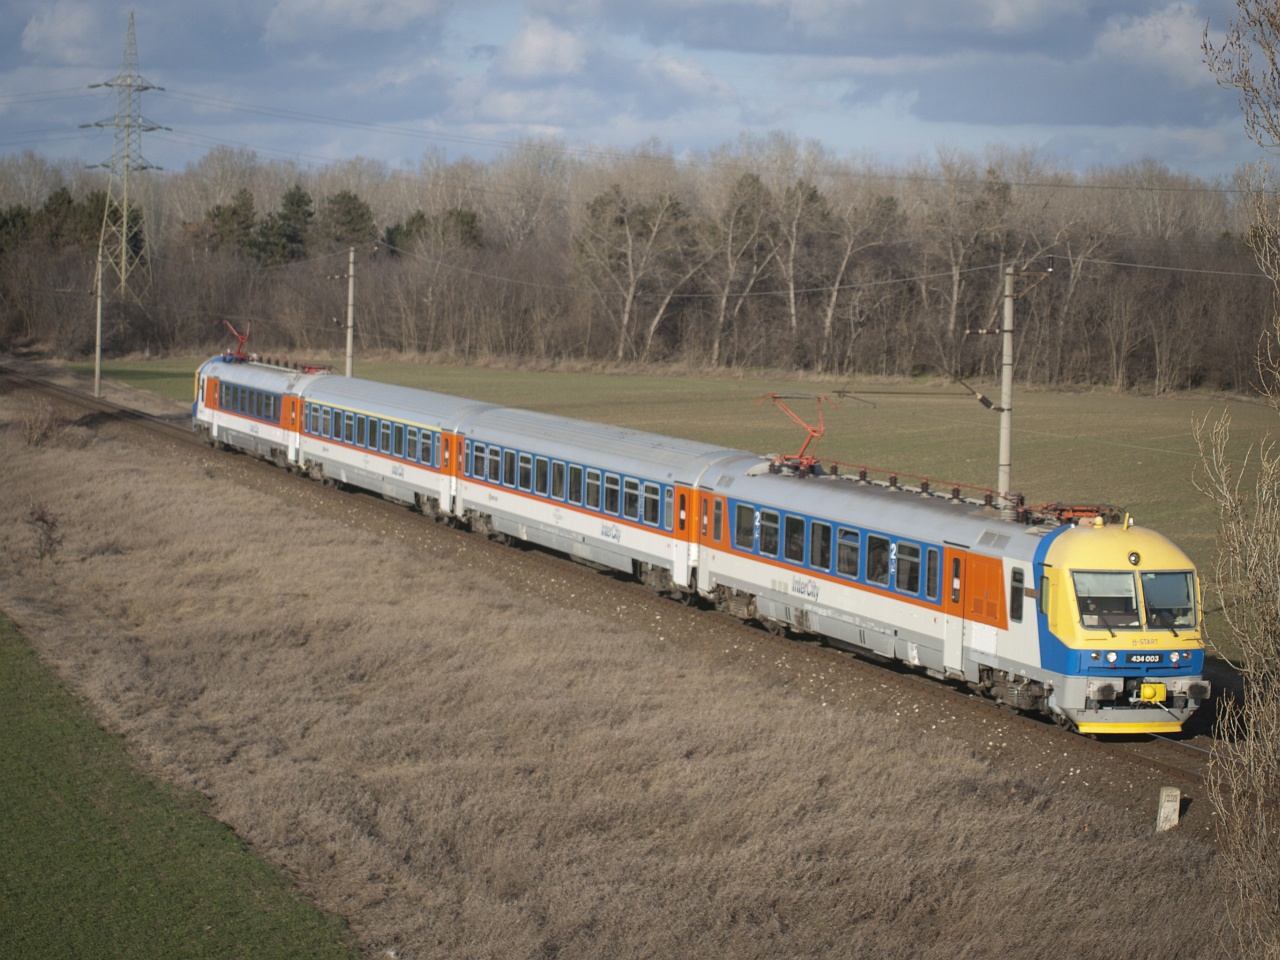 Február 1-én a Ganz által gyártott egykori intercity motorvonat tart Taksonyból Dunavarsányba 3716-os számú S25-ös személyvonatként